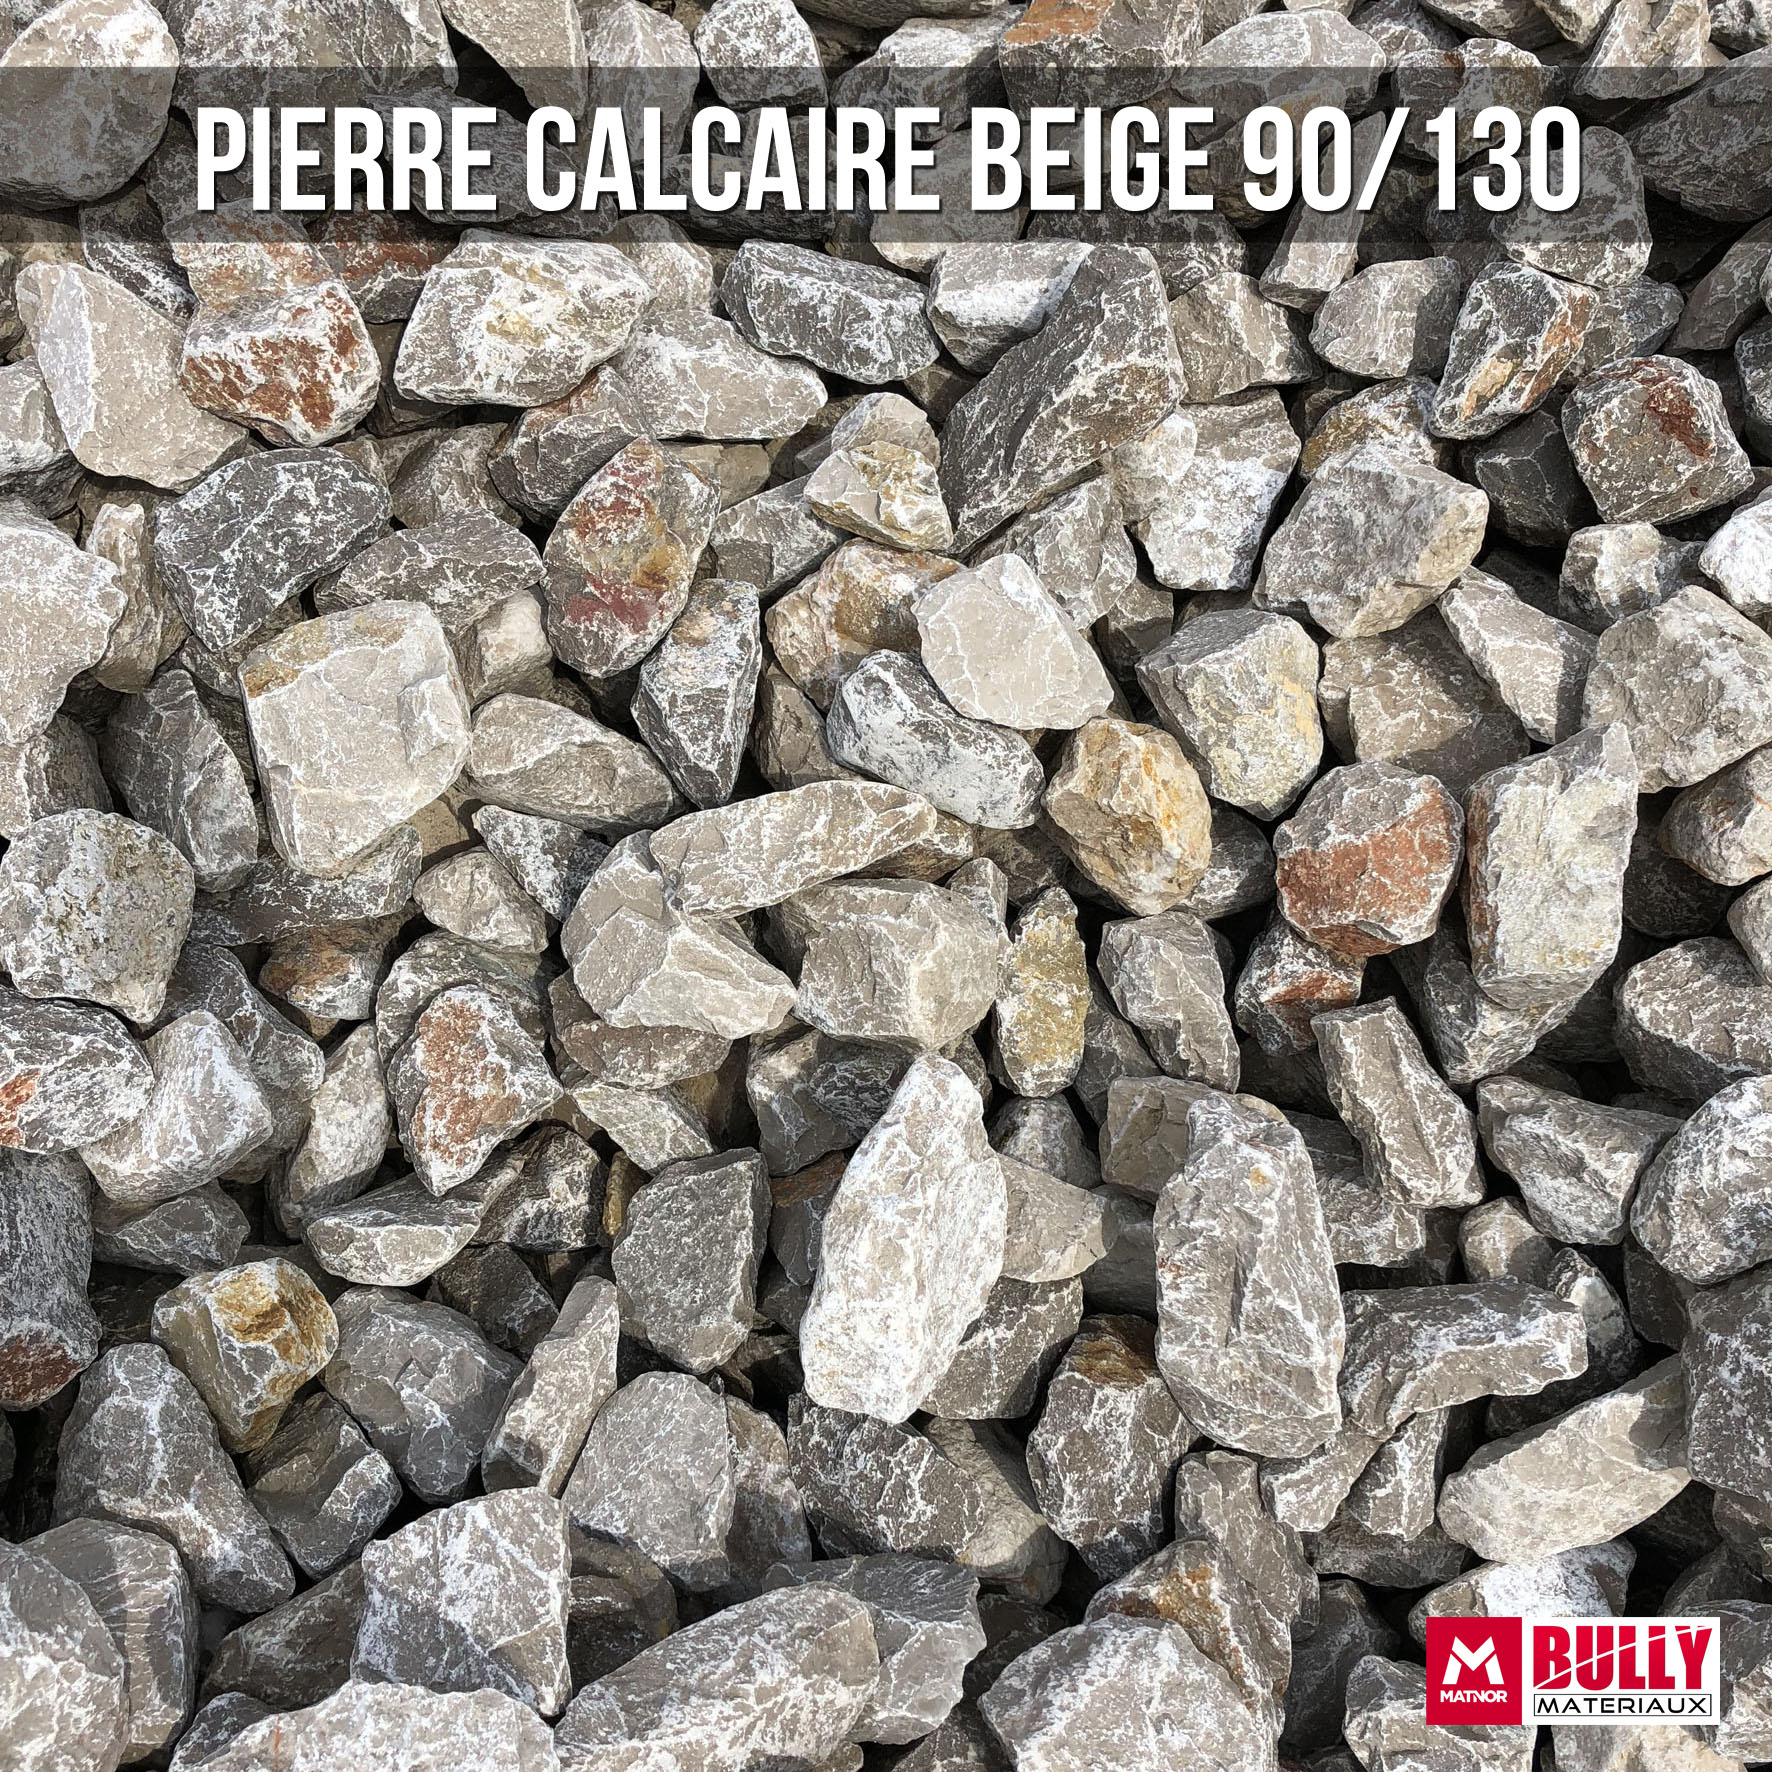 Pierre calcaire beige 90/130